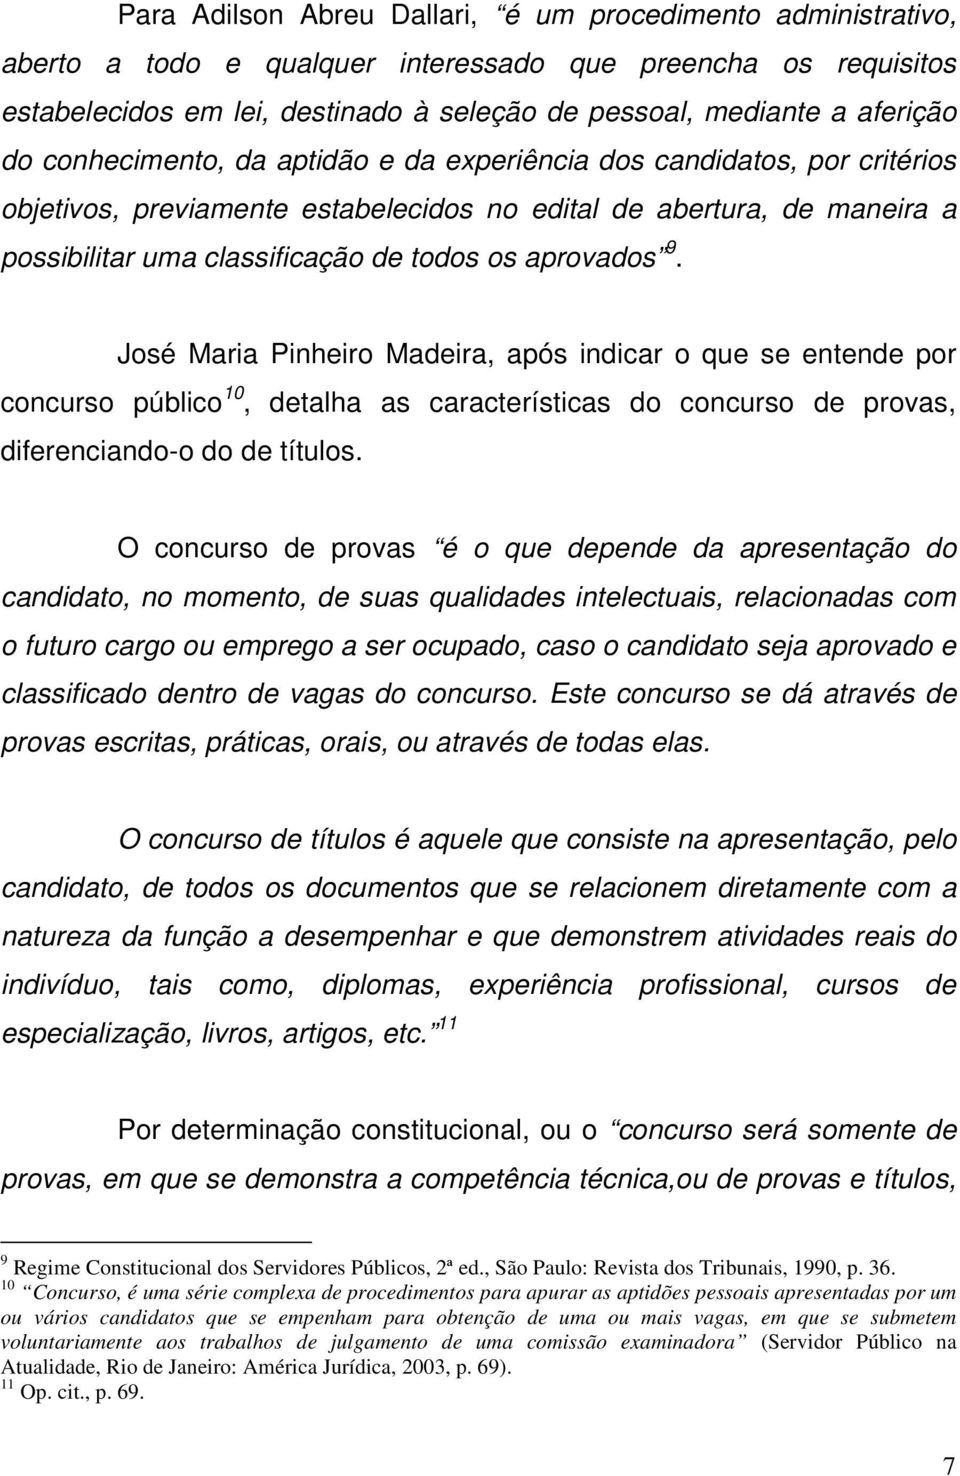 aprovados 9. José Maria Pinheiro Madeira, após indicar o que se entende por concurso público 10, detalha as características do concurso de provas, diferenciando-o do de títulos.